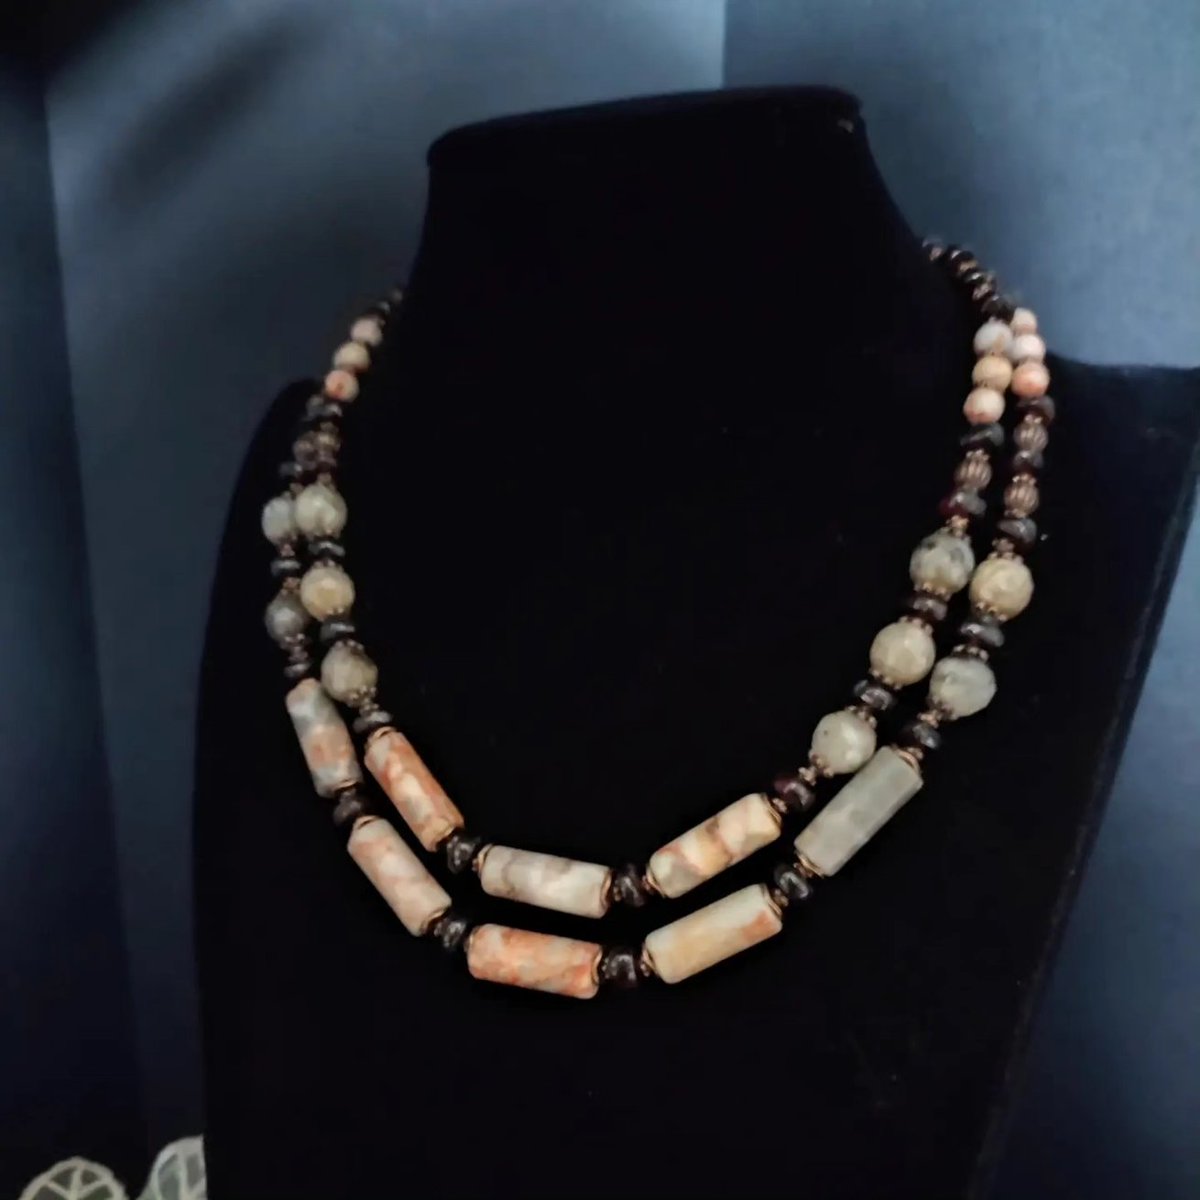 Gemstone layered necklace 
etsy.com/it/listing/160…
#necklace #necklaces #gemstonejewelry #layerednecklace #handmadejewelry #necklacedesign #etsyhandmade #etsygifts #etsysale